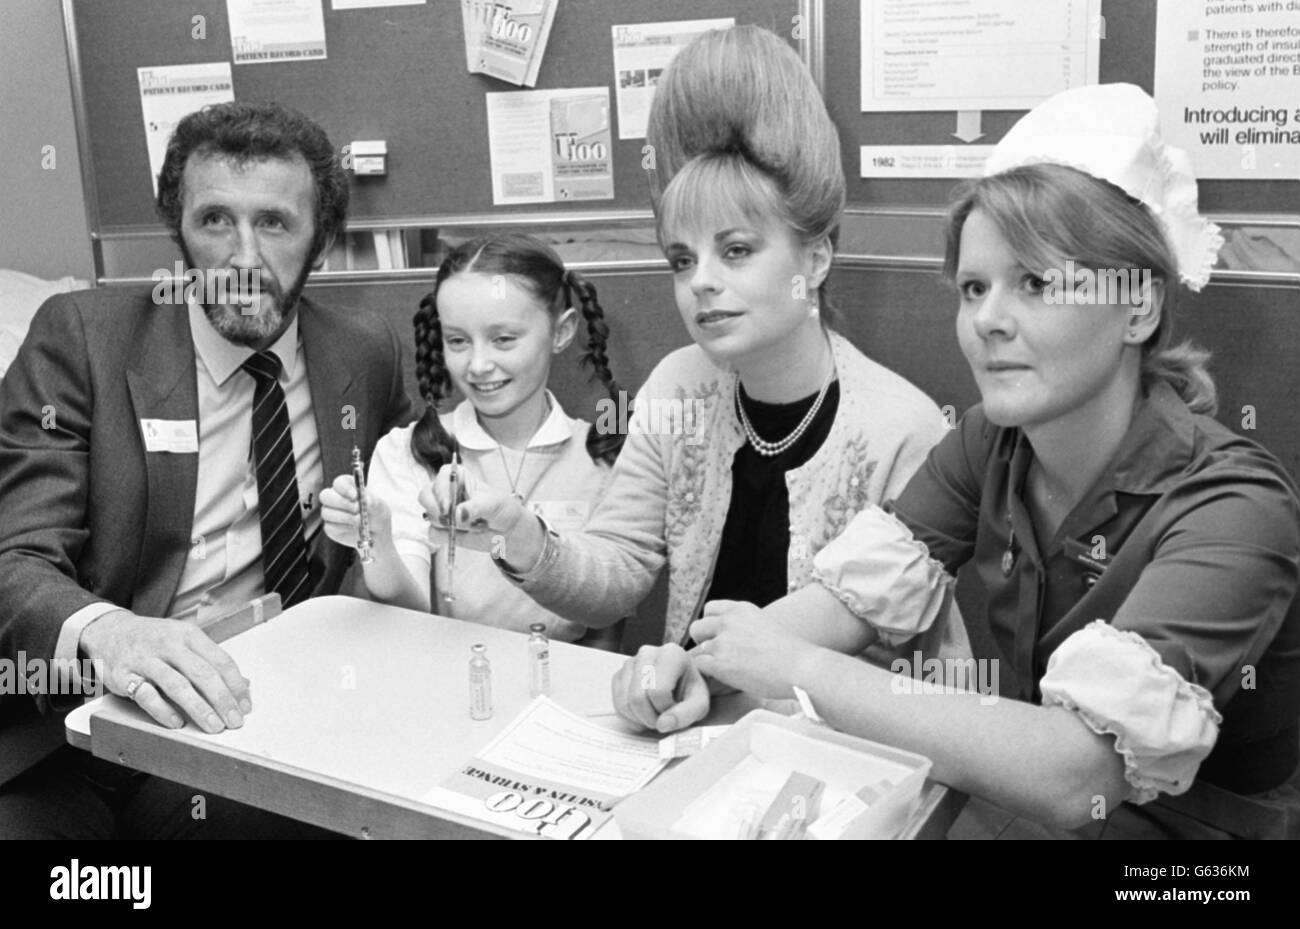 Diabétiques, footballeur écossais Danny McGrein, danseuse/actrice en herbe Tara Moran, 11 ans, et la chanteuse pop mari 'miss Beehive' Wilson, découvrez un nouveau système d'insuline de la consœur Brenda Griffiths à l'hôpital Guy. Banque D'Images